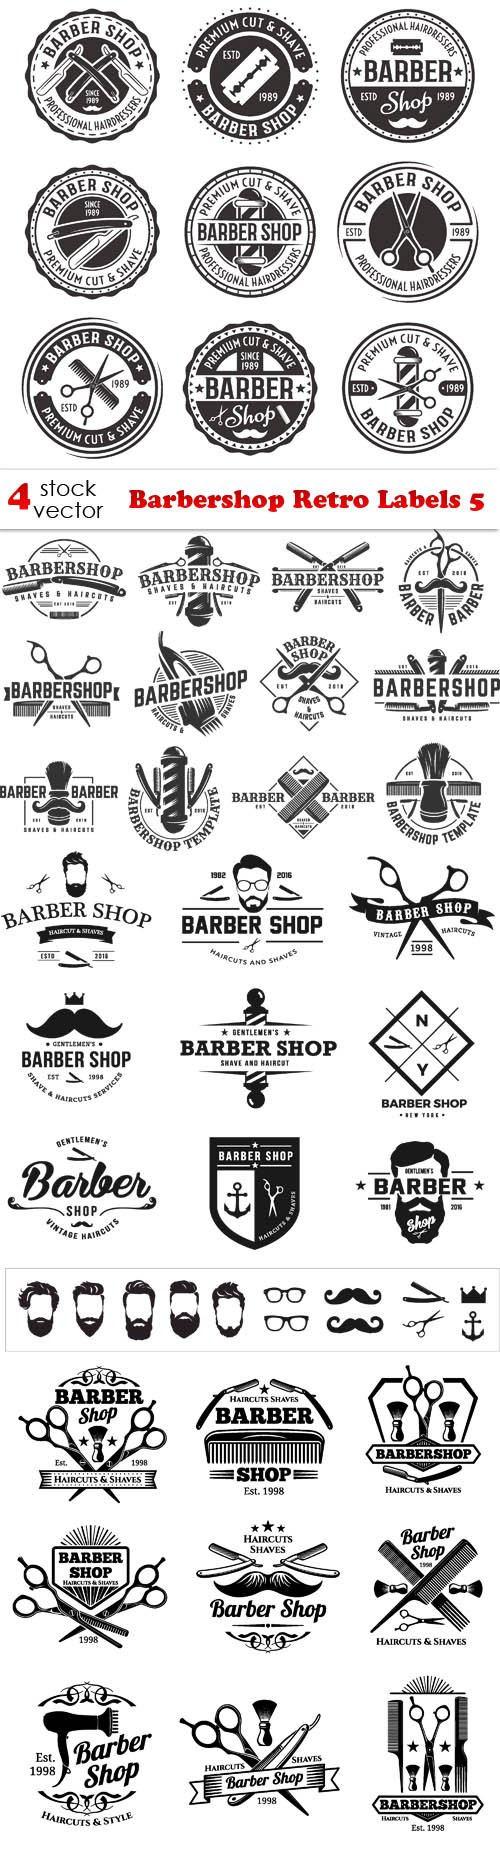 Vectors - Barbershop Retro Labels 5